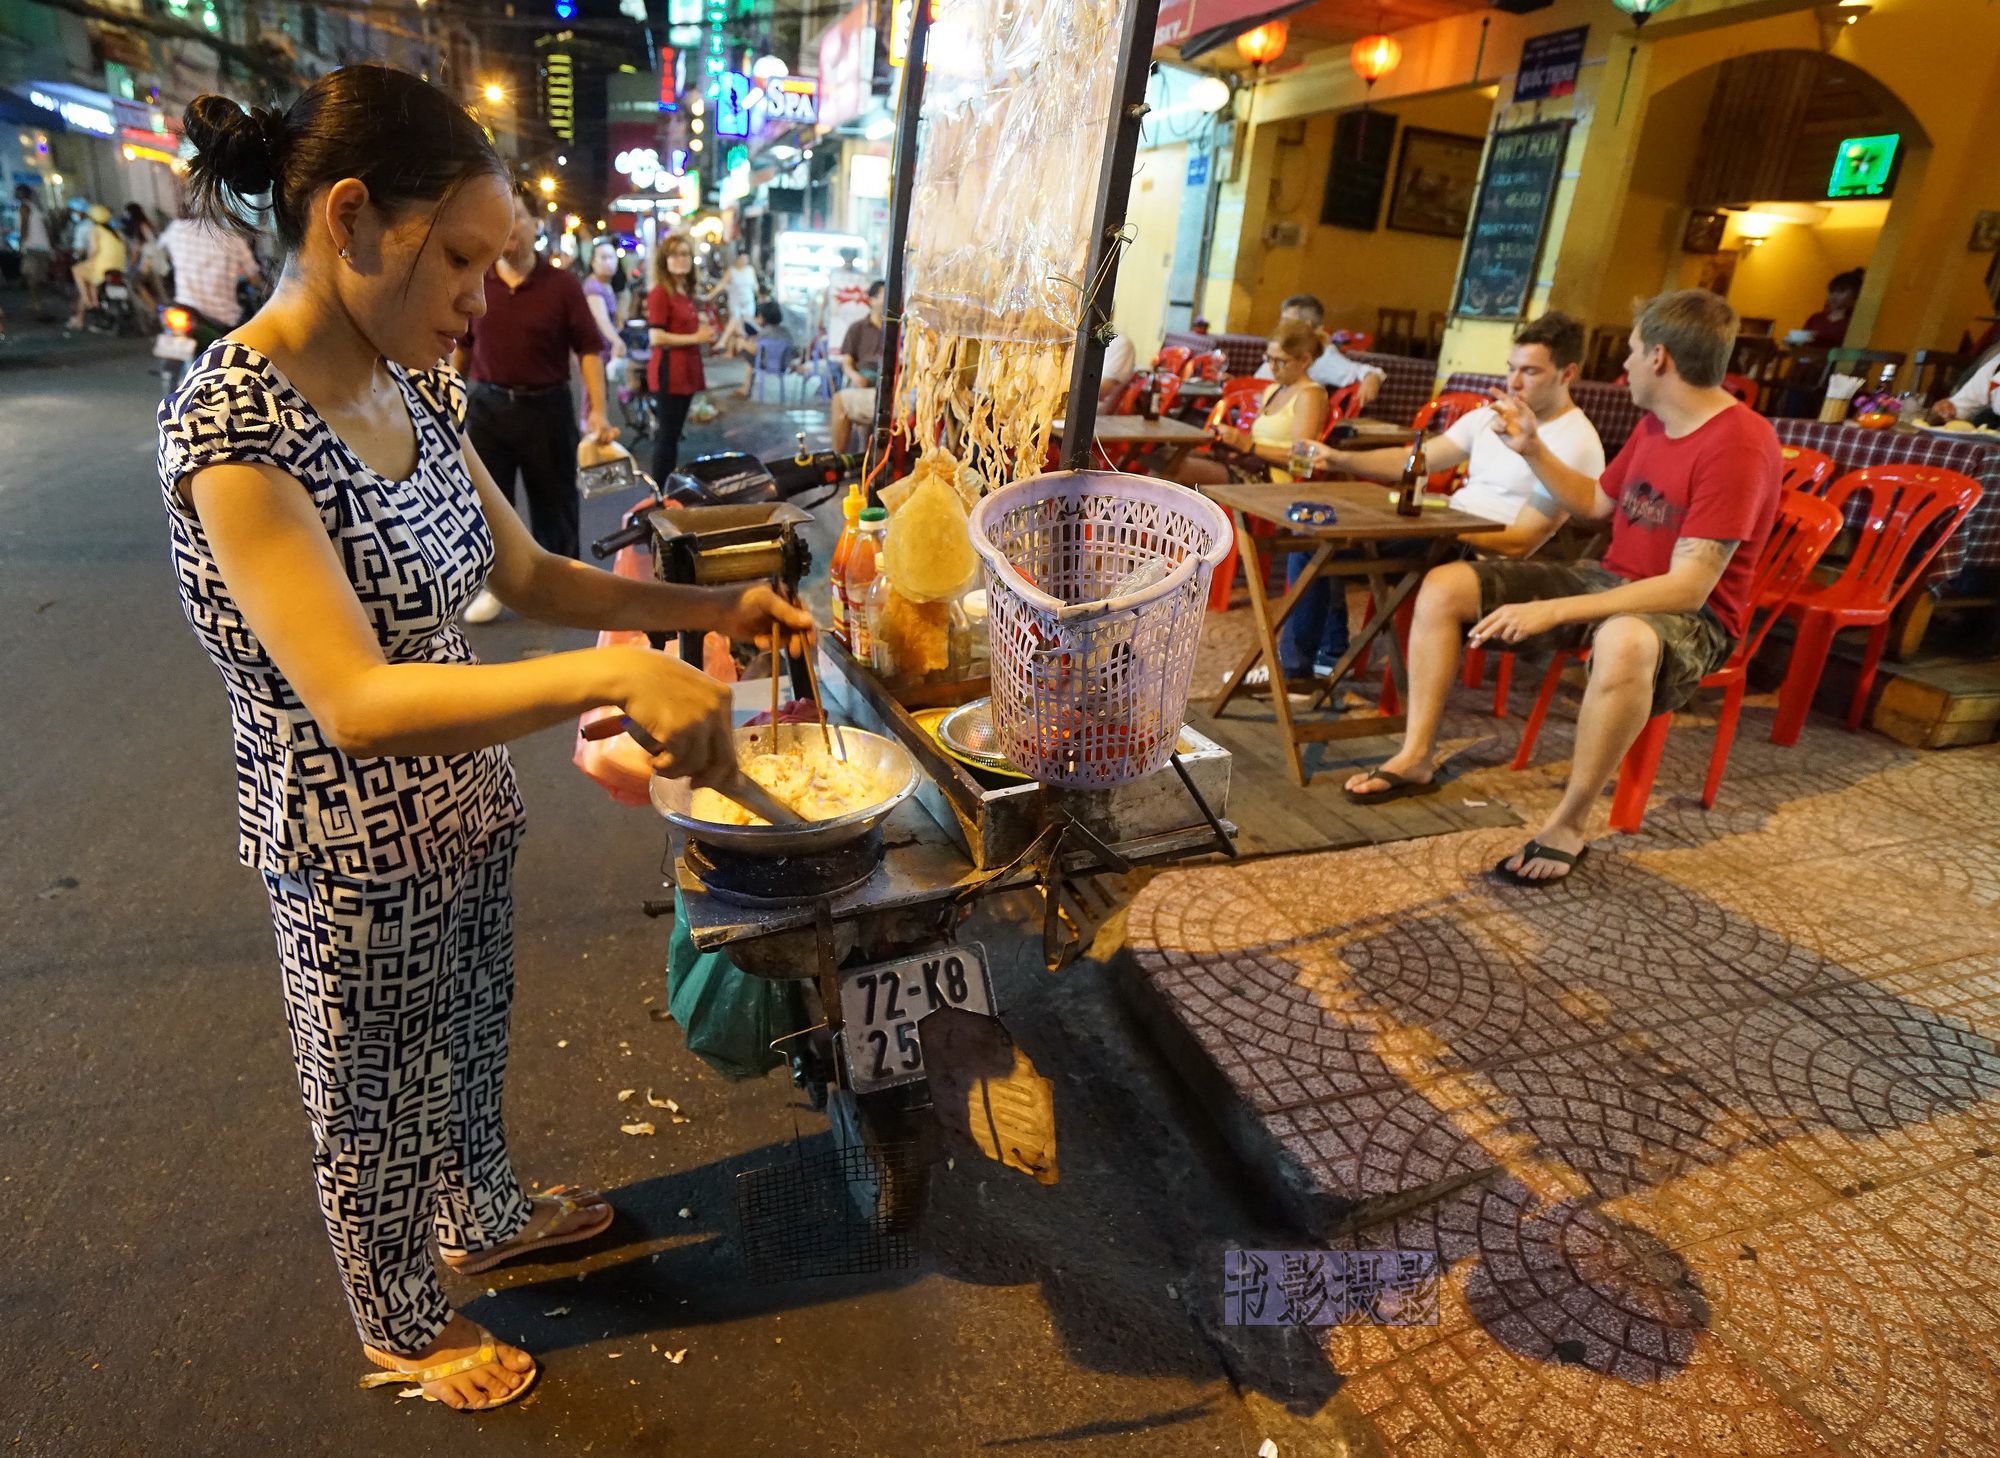 炸鱿鱼与滴漏咖啡,越南有什么值得留恋?